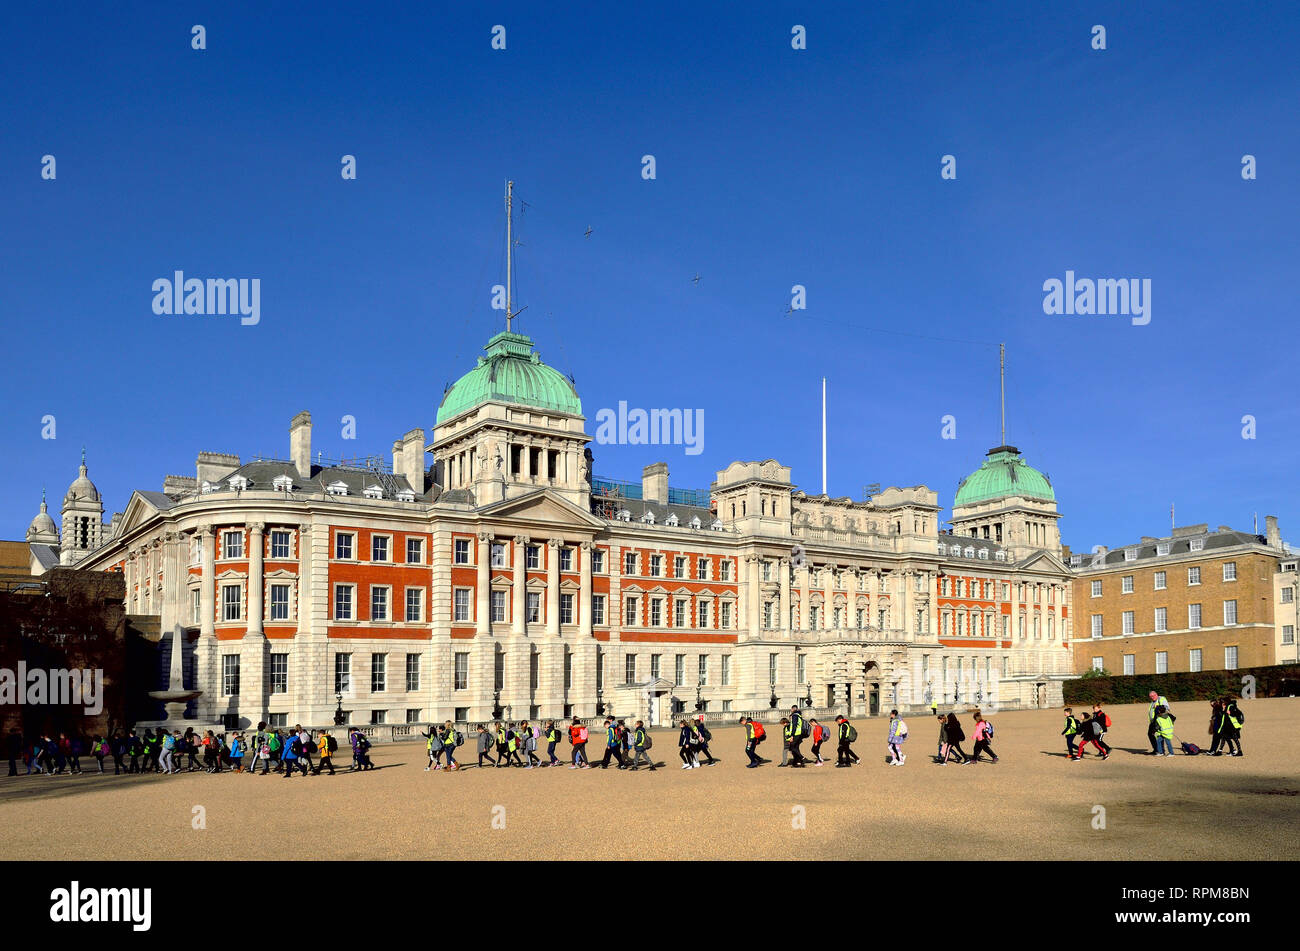 London, England, UK. Horse Guards Parade - Ministerium für Verteidigung, Old Admiralty Building - Gruppe der Grundschüler auf Klassenfahrt Stockfoto